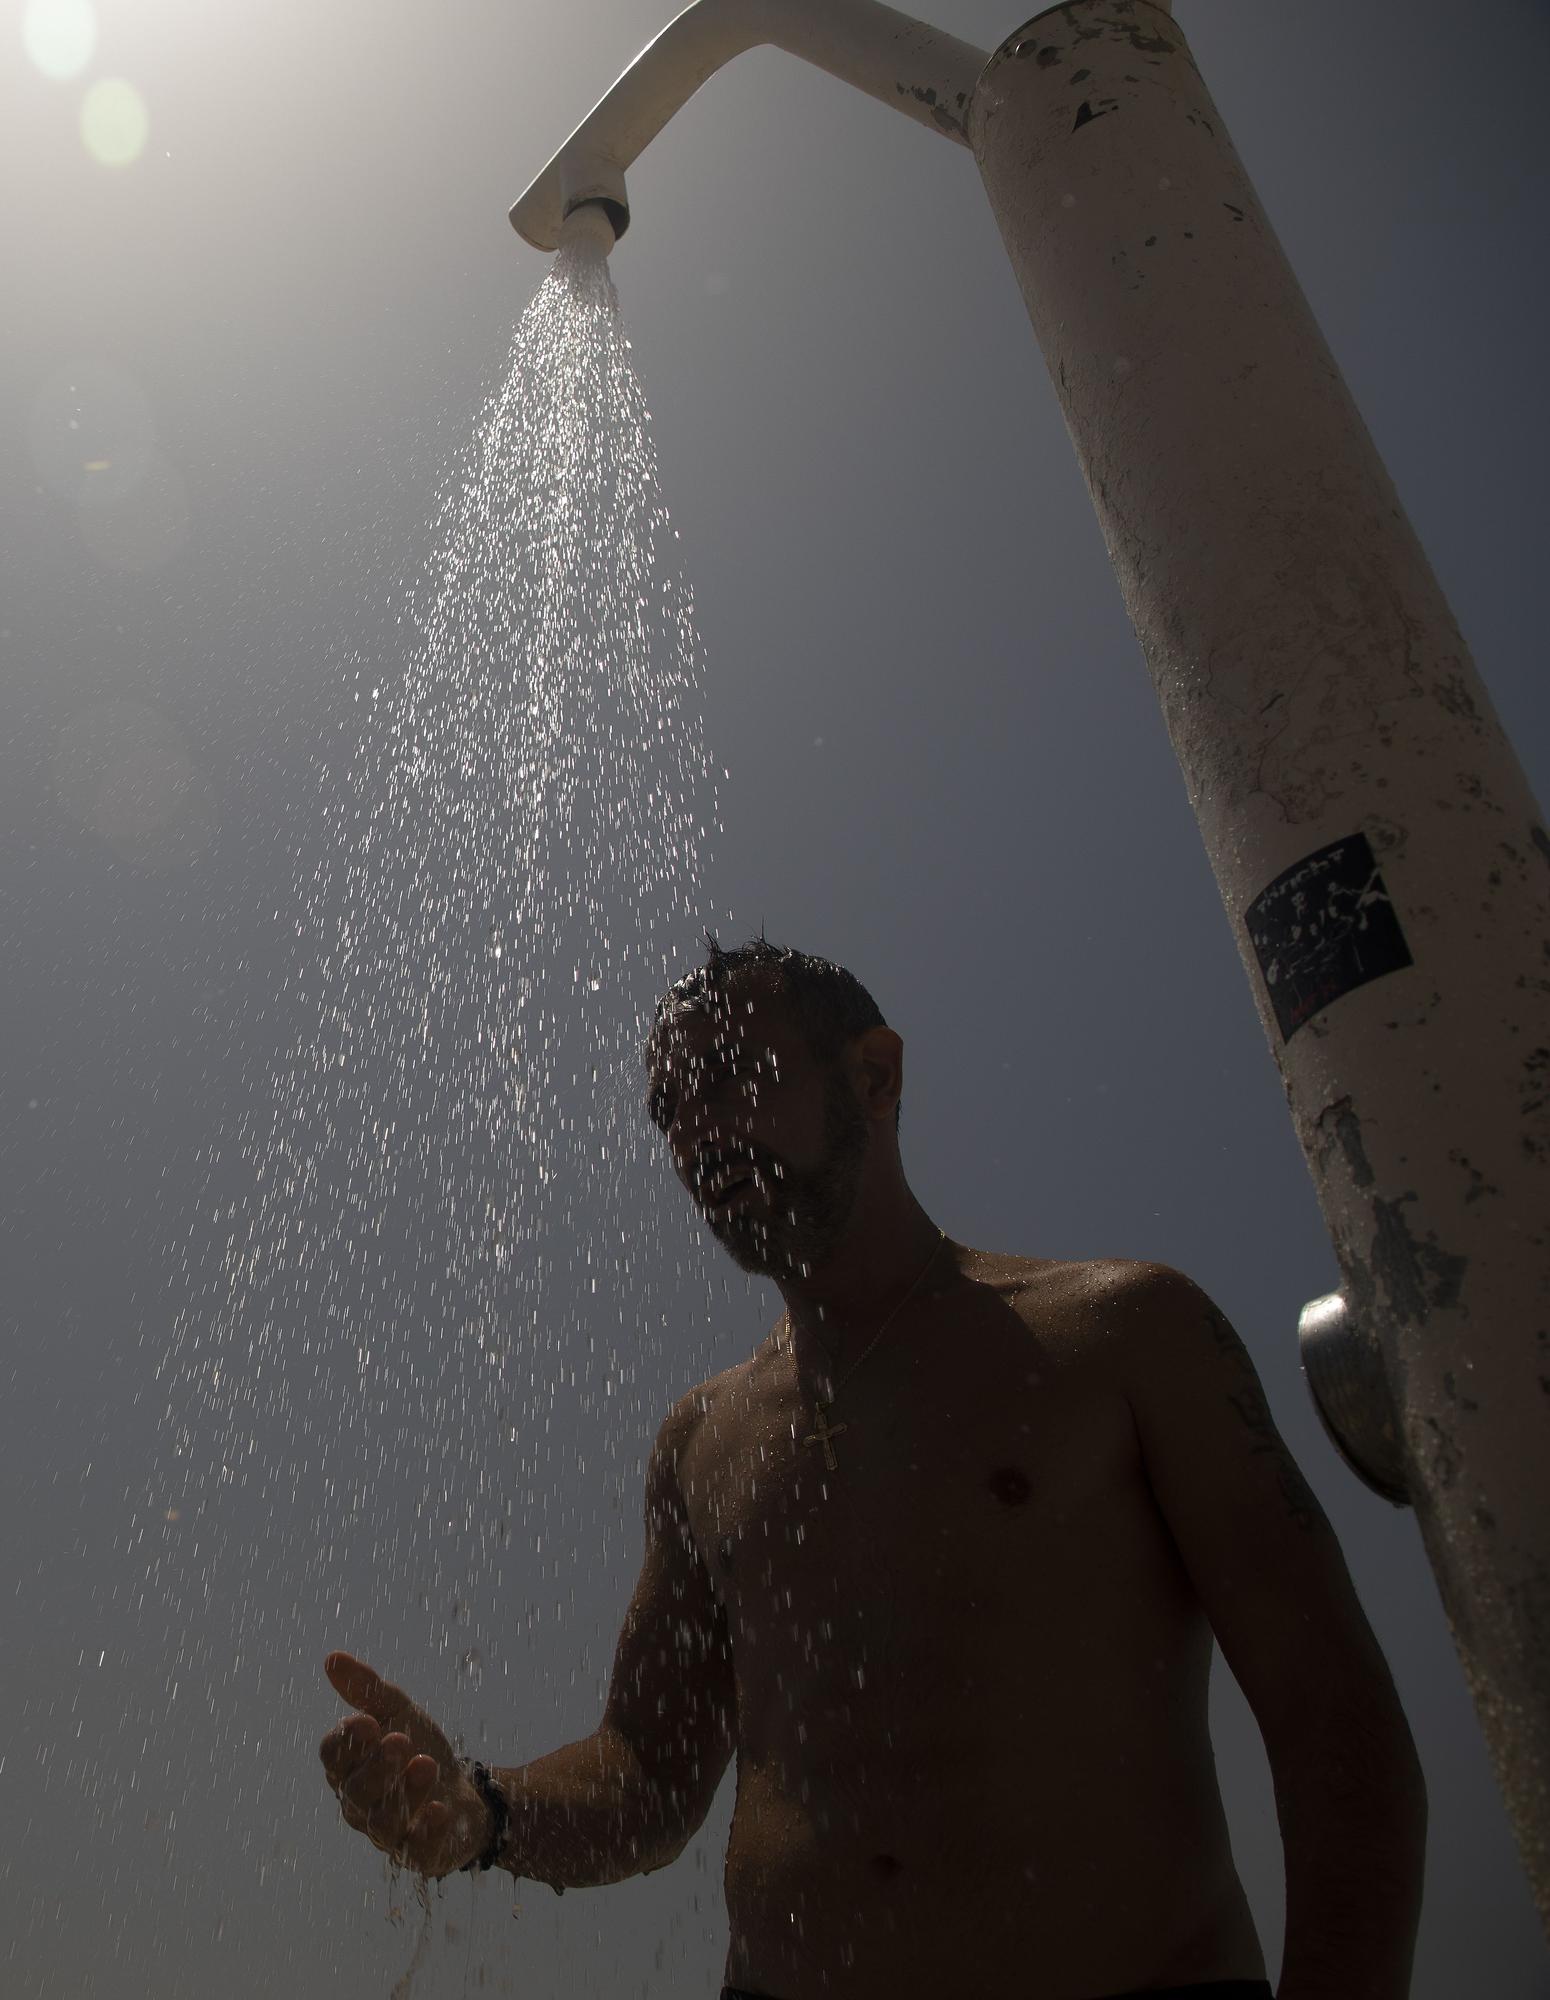 Hitze auf Mallorca: Wenn die Sonne auf die Playa de Palma knallt